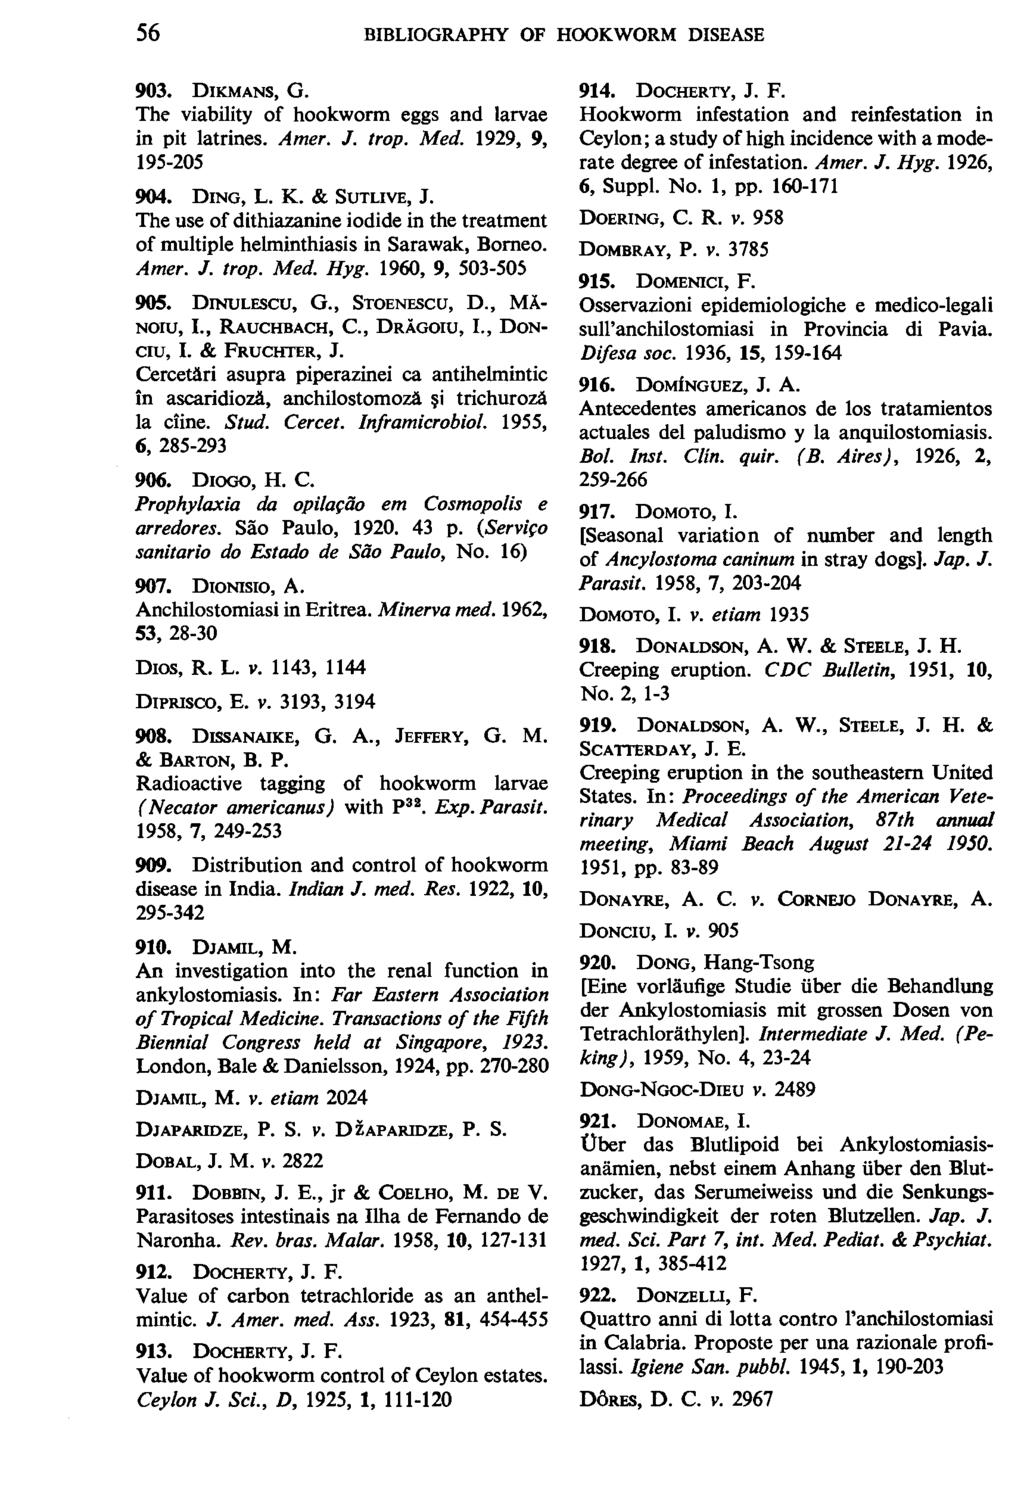 56 BIBLIOGRAPHY OF HOOKWORM DISEASE 903. DIKMANS, G. The viability of hookworm eggs and larvae in pit latrines. Amer. J. trop. Med. 1929, 9, 195-205 904. DING, L. K. & SUTLIVE, J.